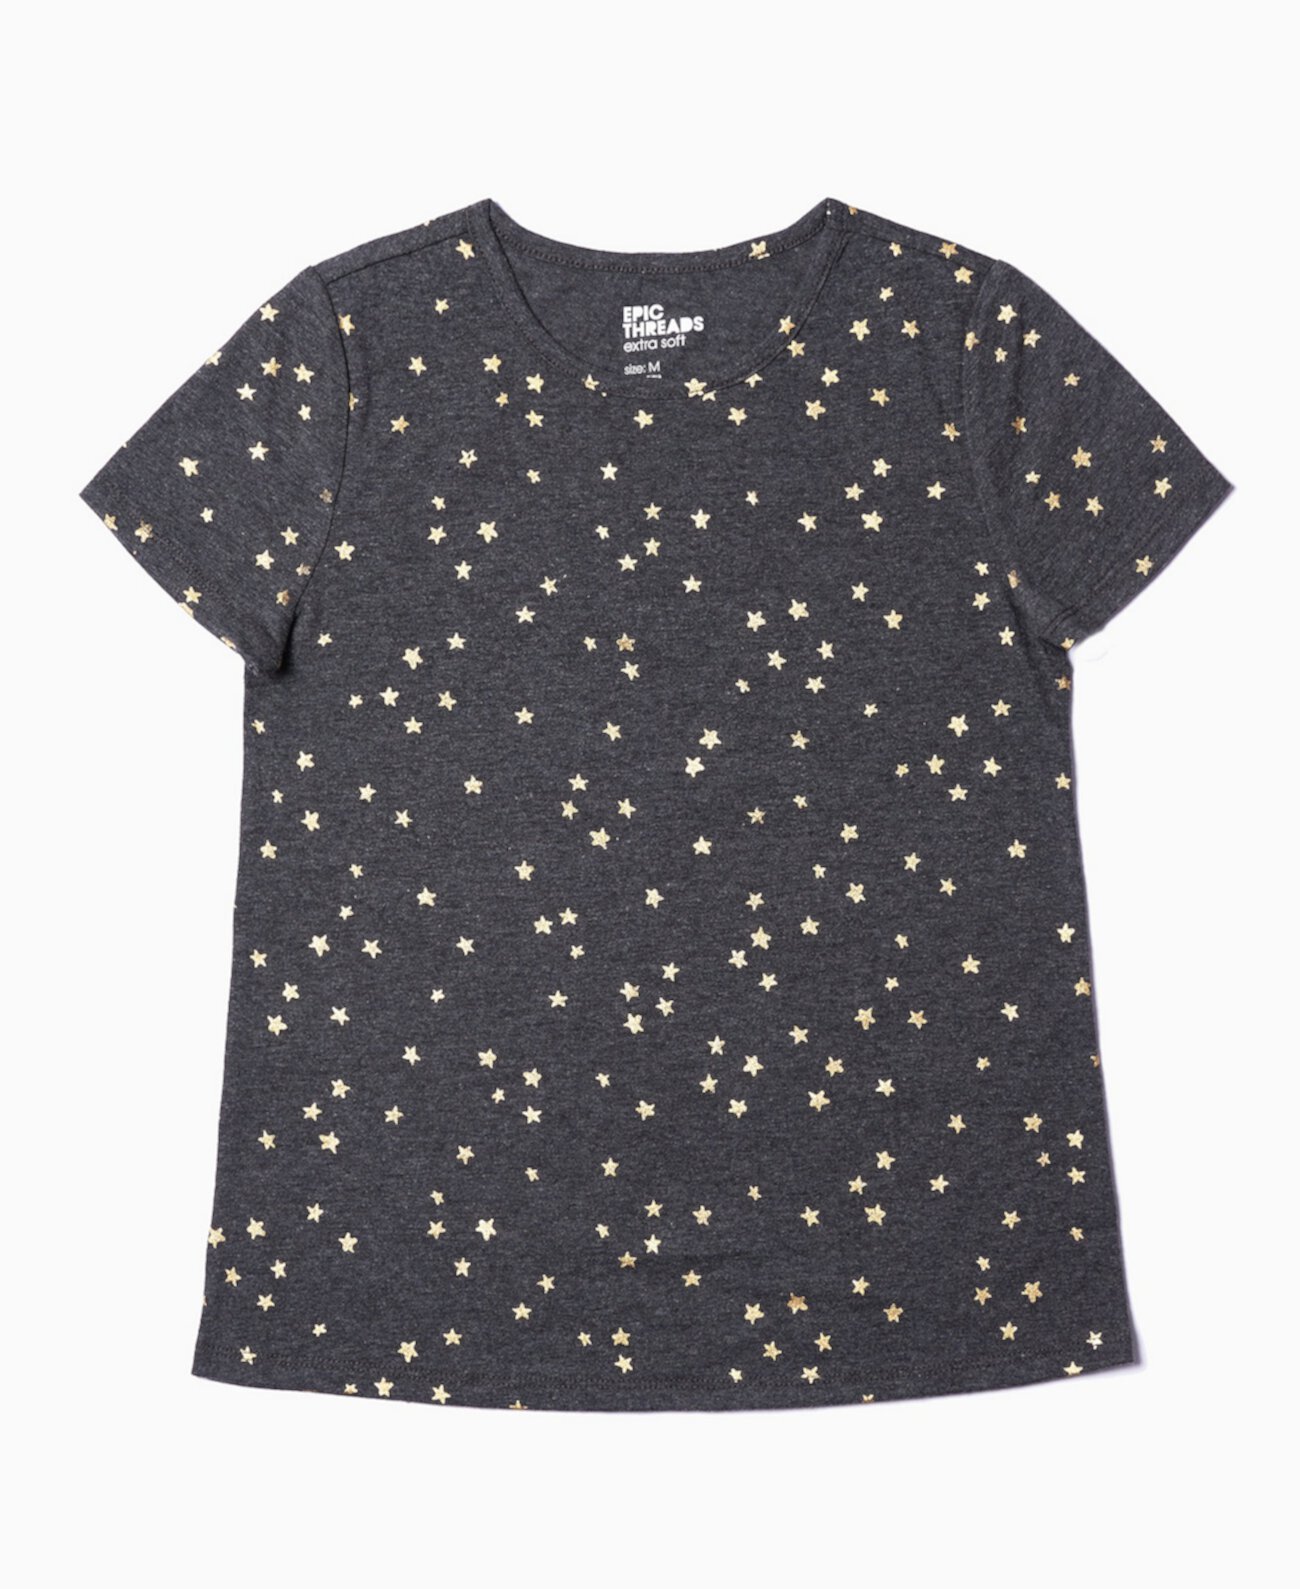 Базовая футболка с принтом Big Girls Star, созданная для Macy's Epic Threads